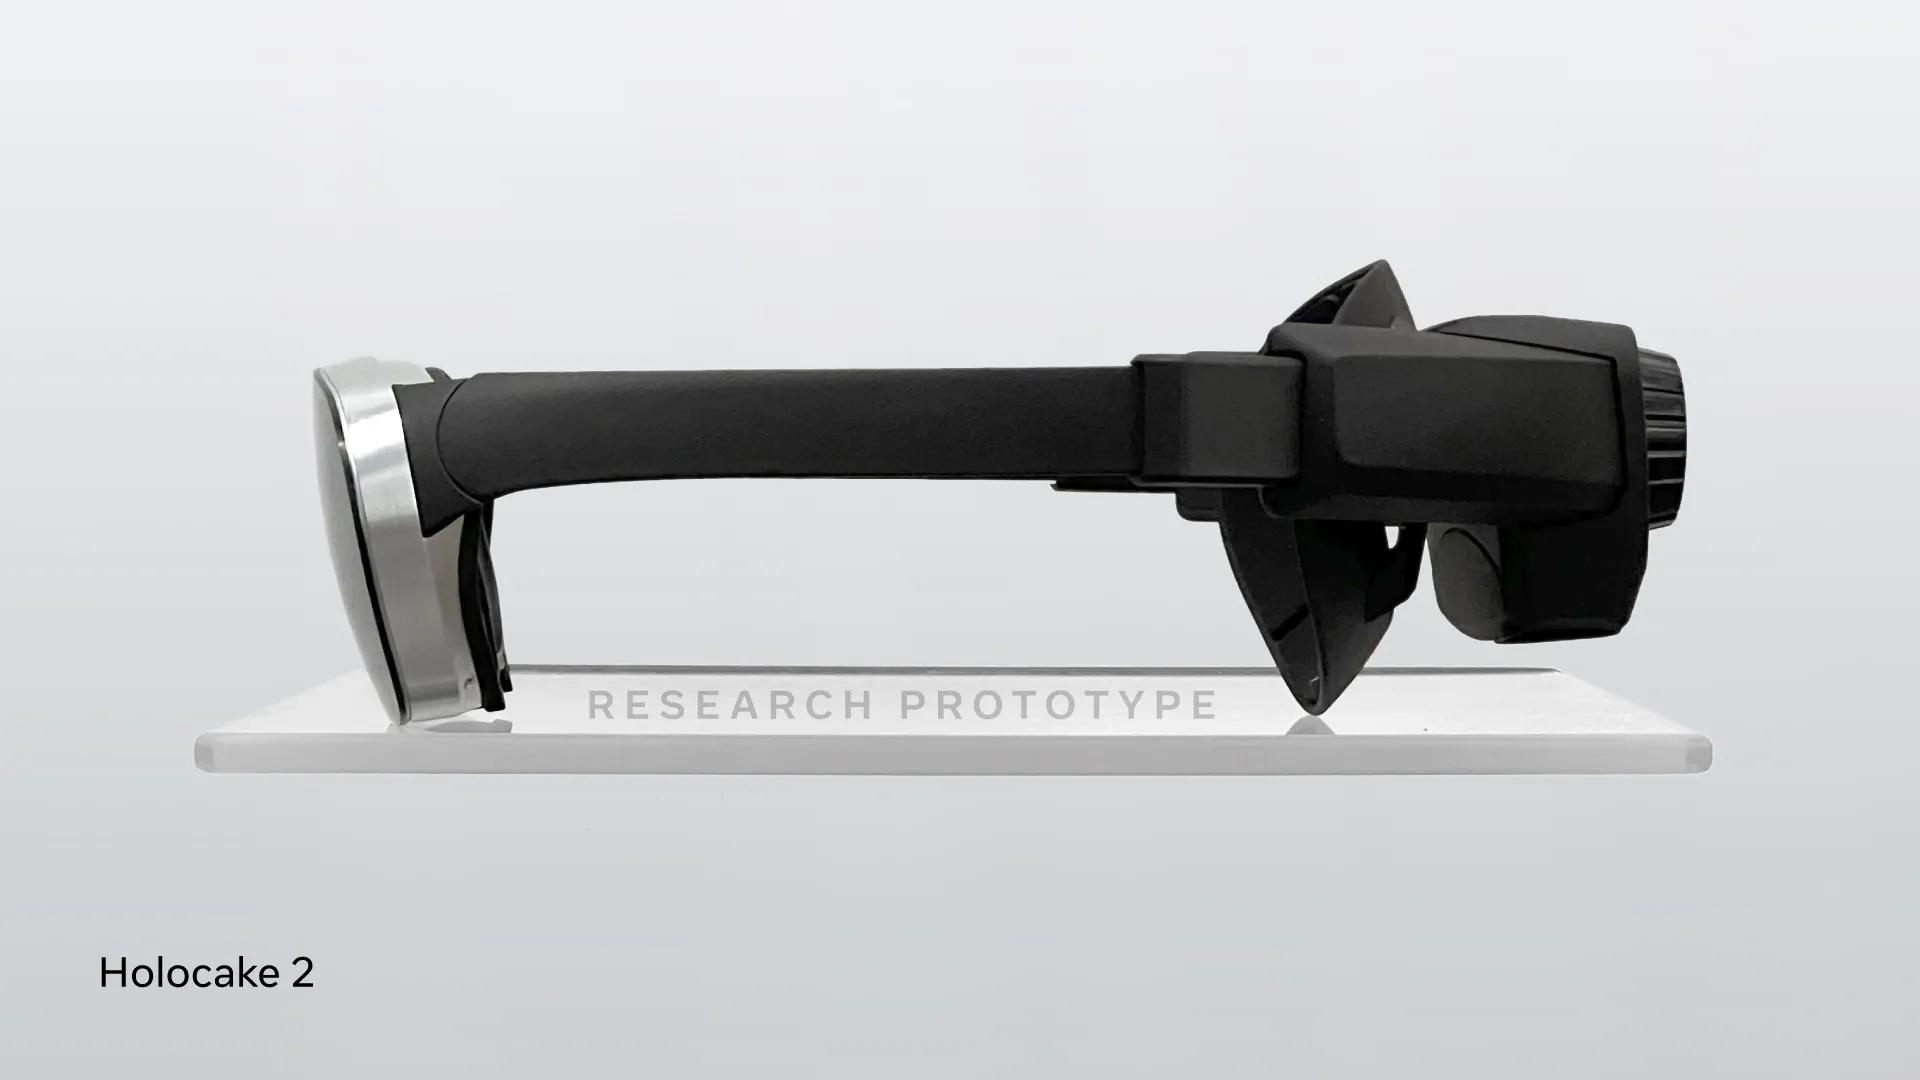 Meta's prototype VR headsets